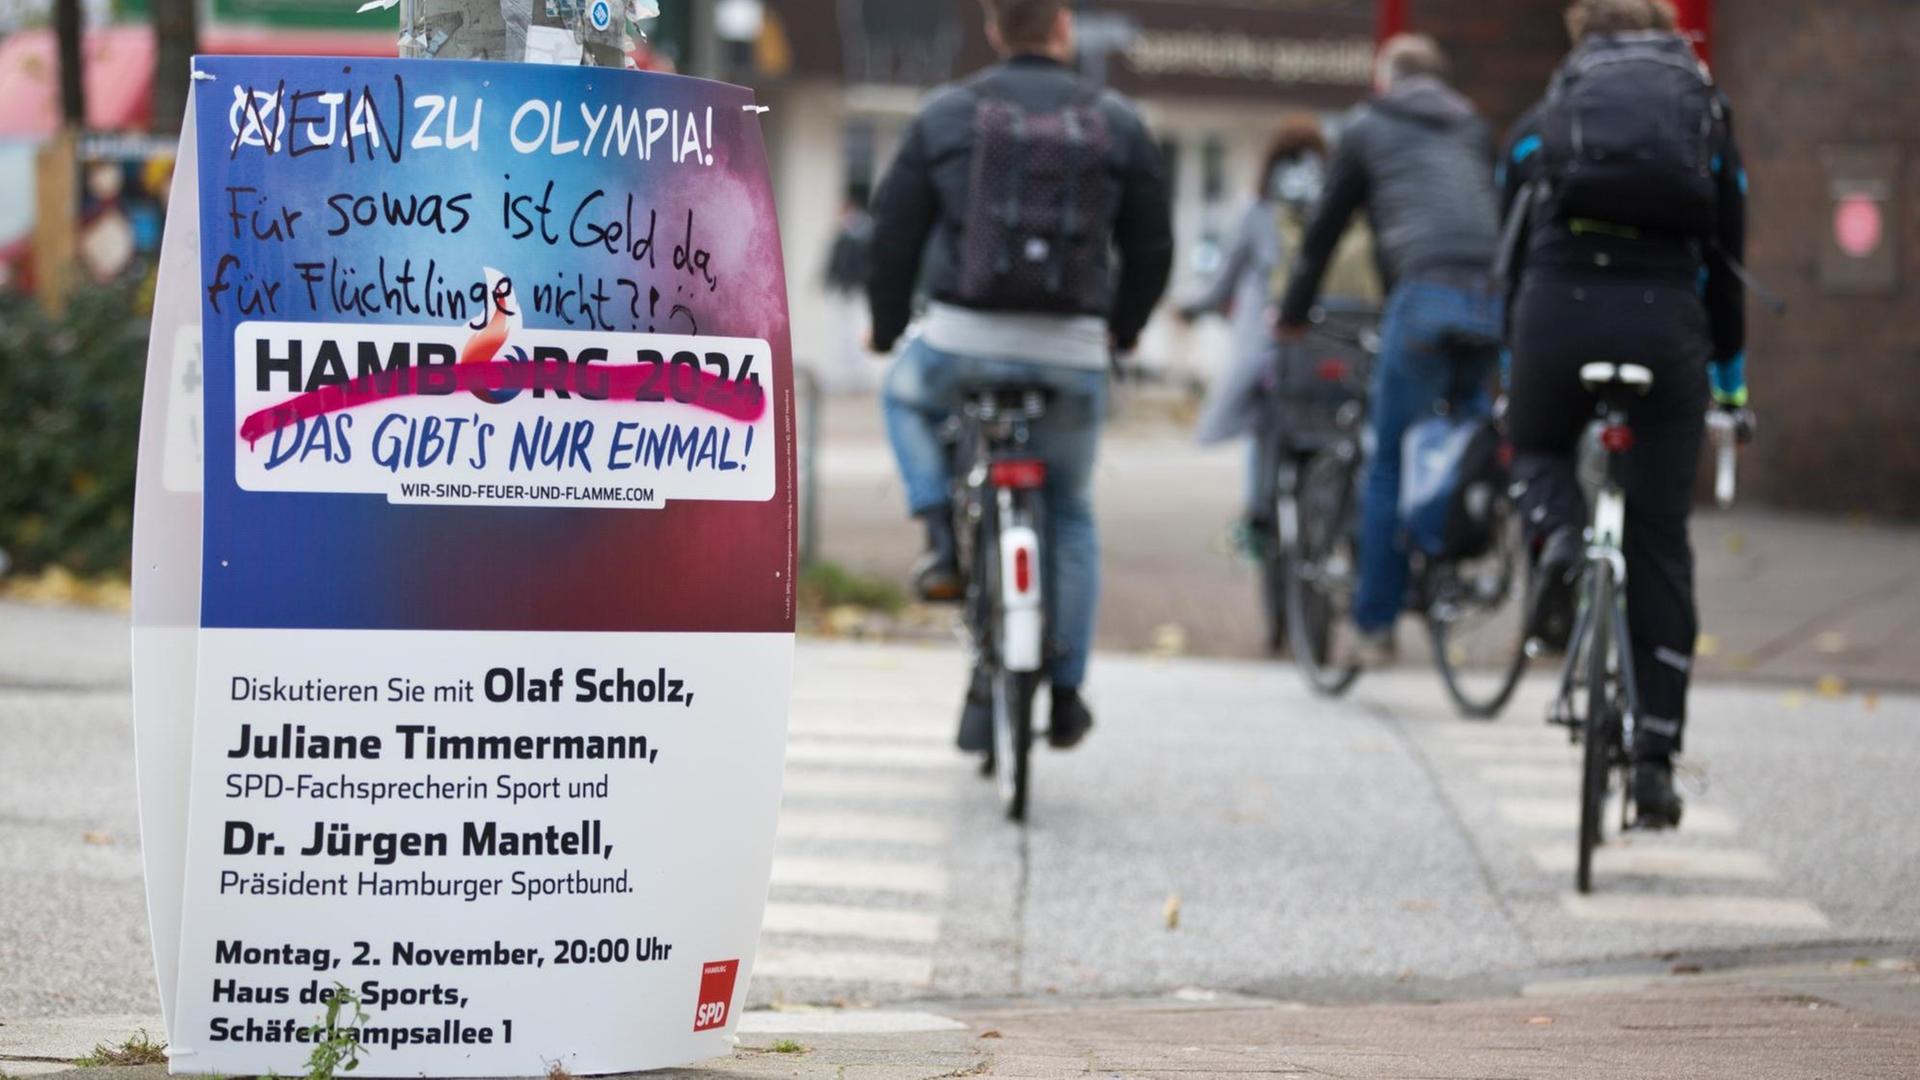 Ein Plakat mit der Einladung zu einer Diskussionsrunde zu Hamburgs Olympiabewerbung "Hamburg 2024" wurde mit kritischen Anmerkungen von Olympia-Gegner versehen.